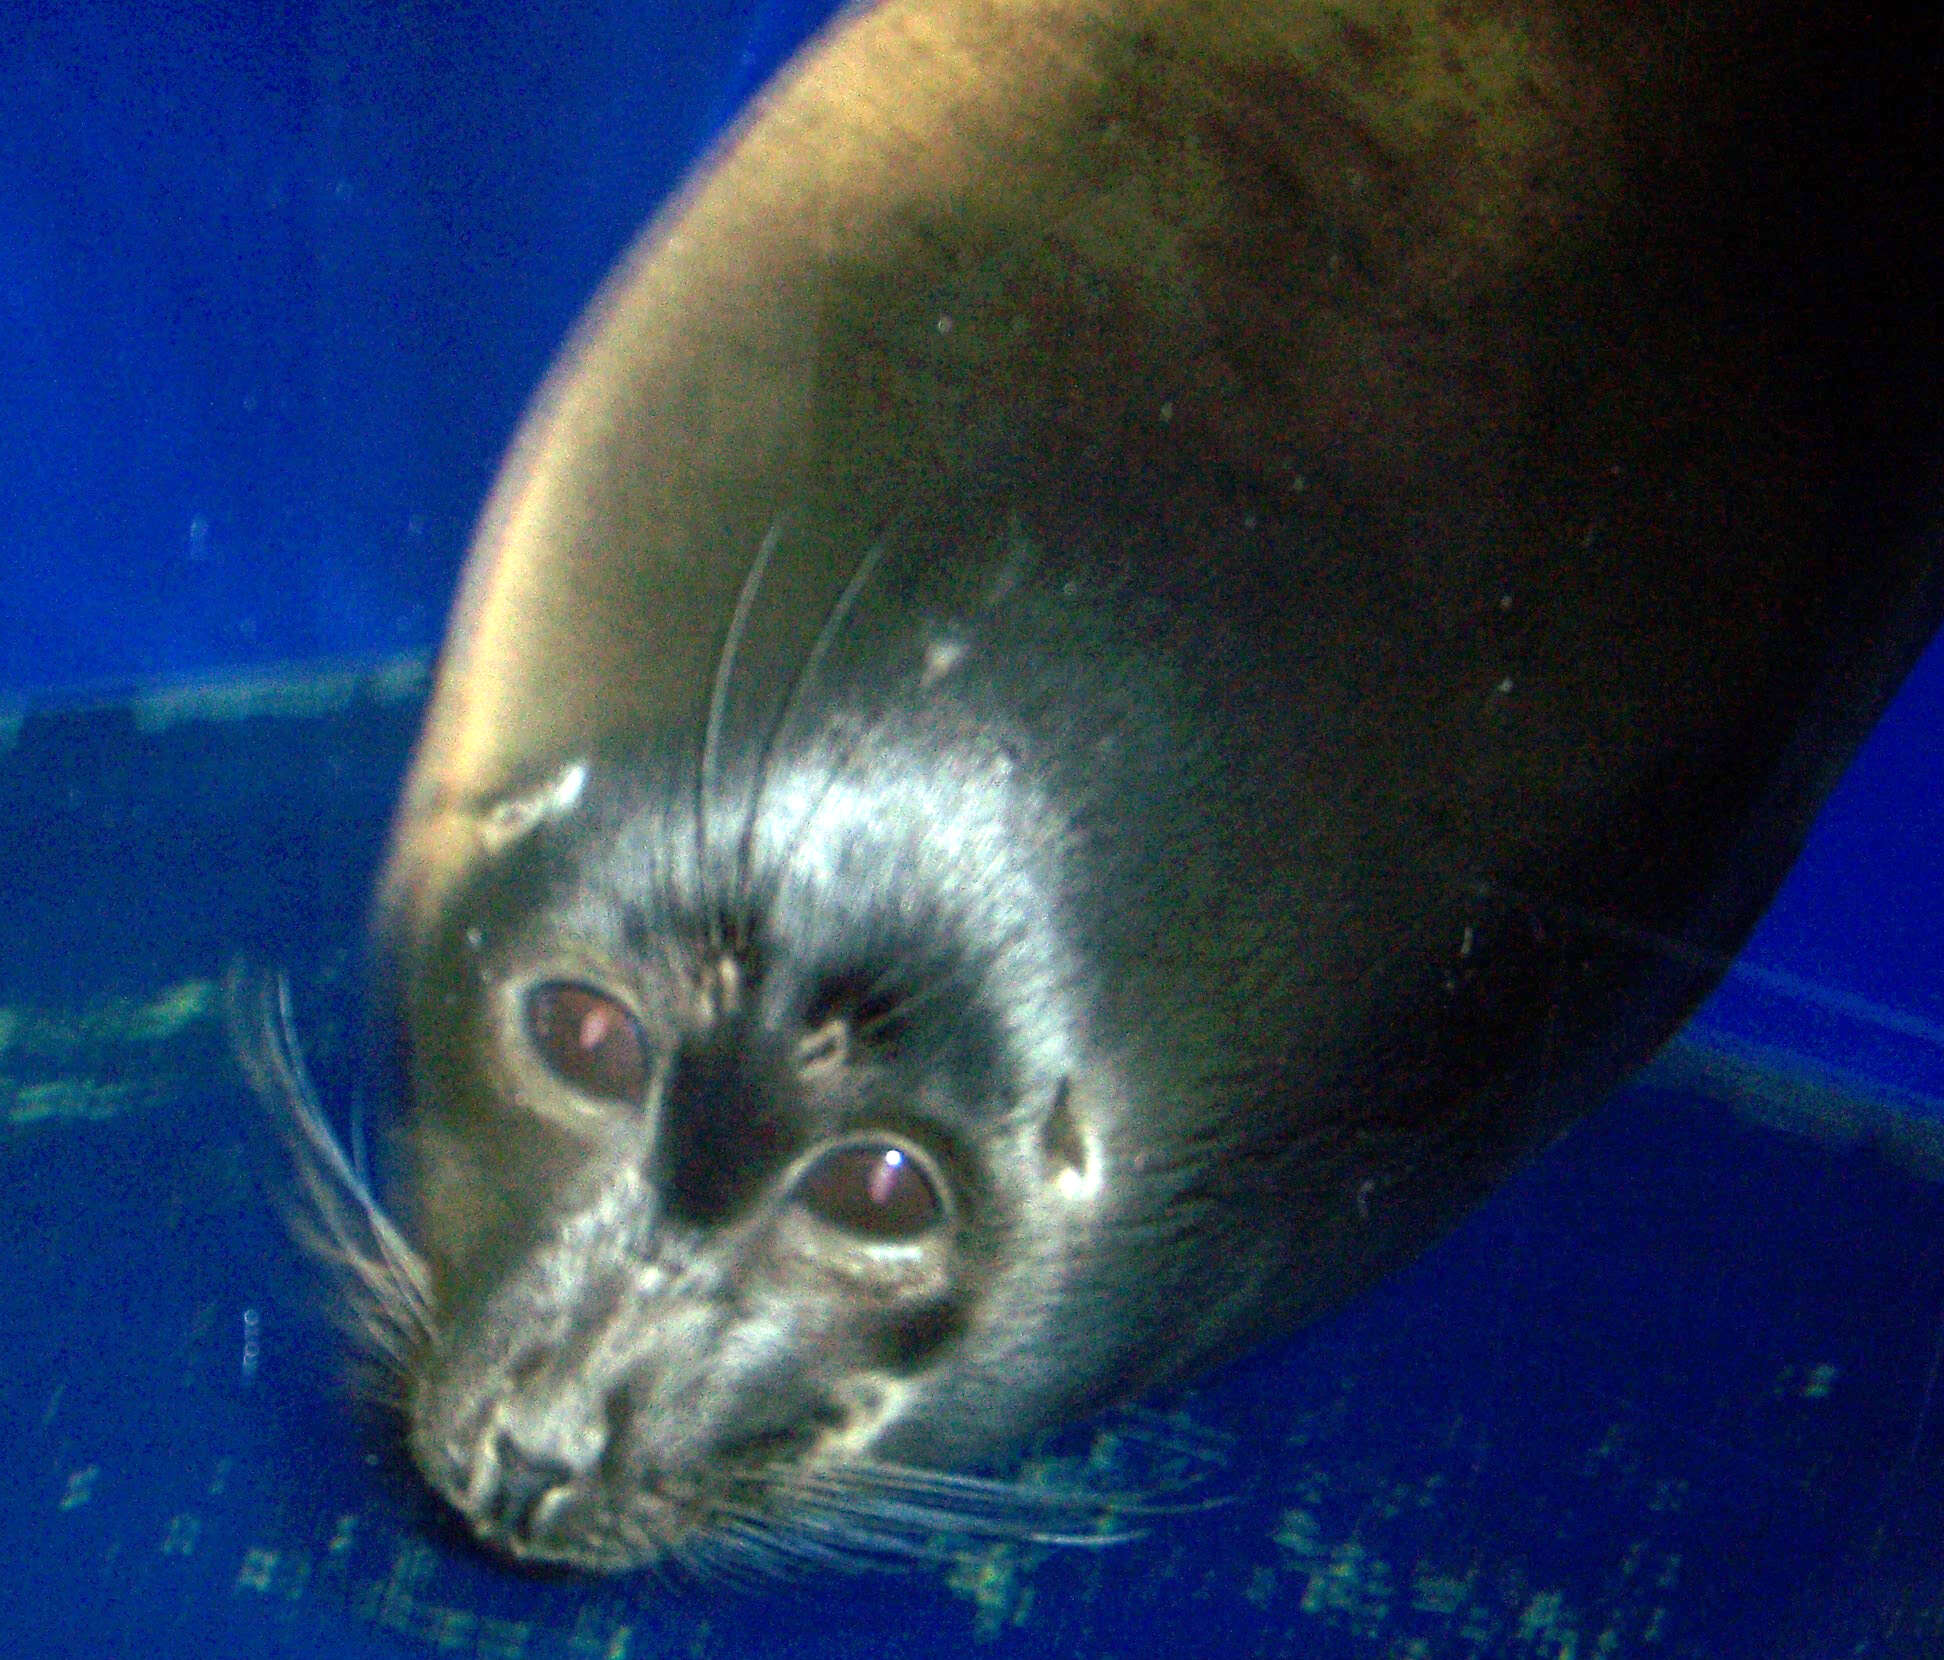 Image of Baikal seal